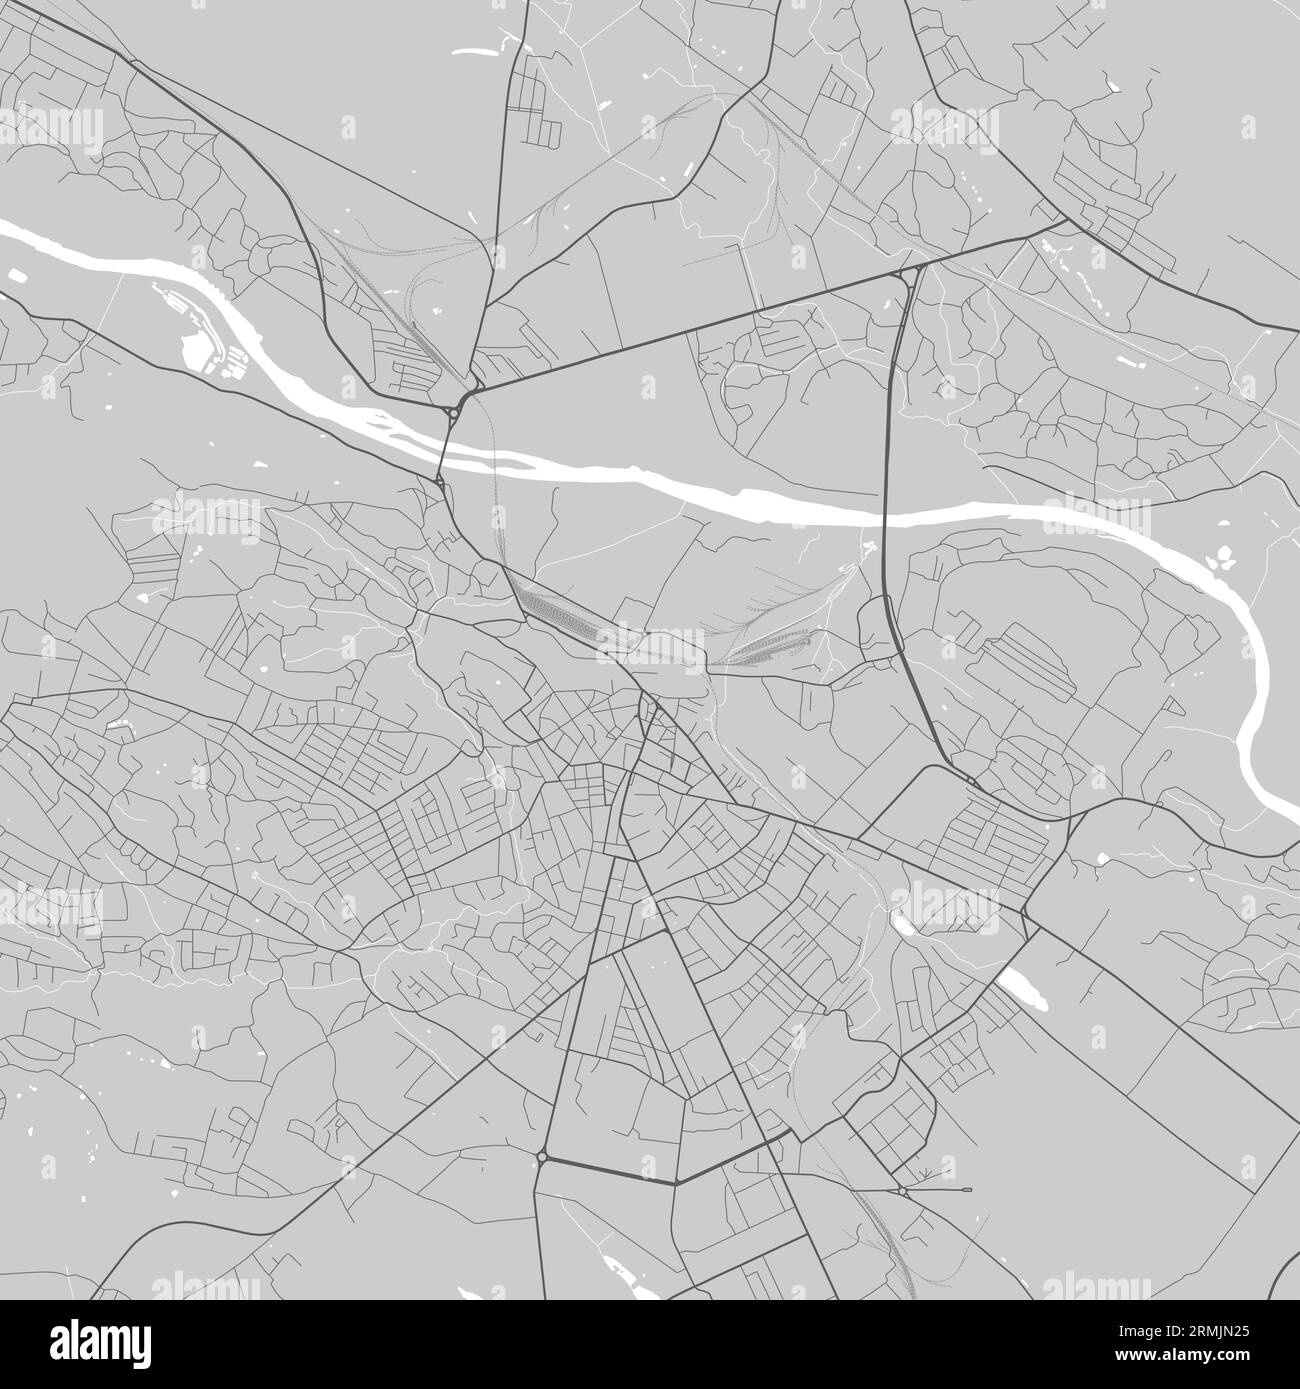 Mappa dettagliata della città di Chernivtsi, oblast center dell'Ucraina. Mappa dell'area amministrativa comunale con fiumi e strade, parchi e ferrovie. Illustr. Vettoriale Illustrazione Vettoriale